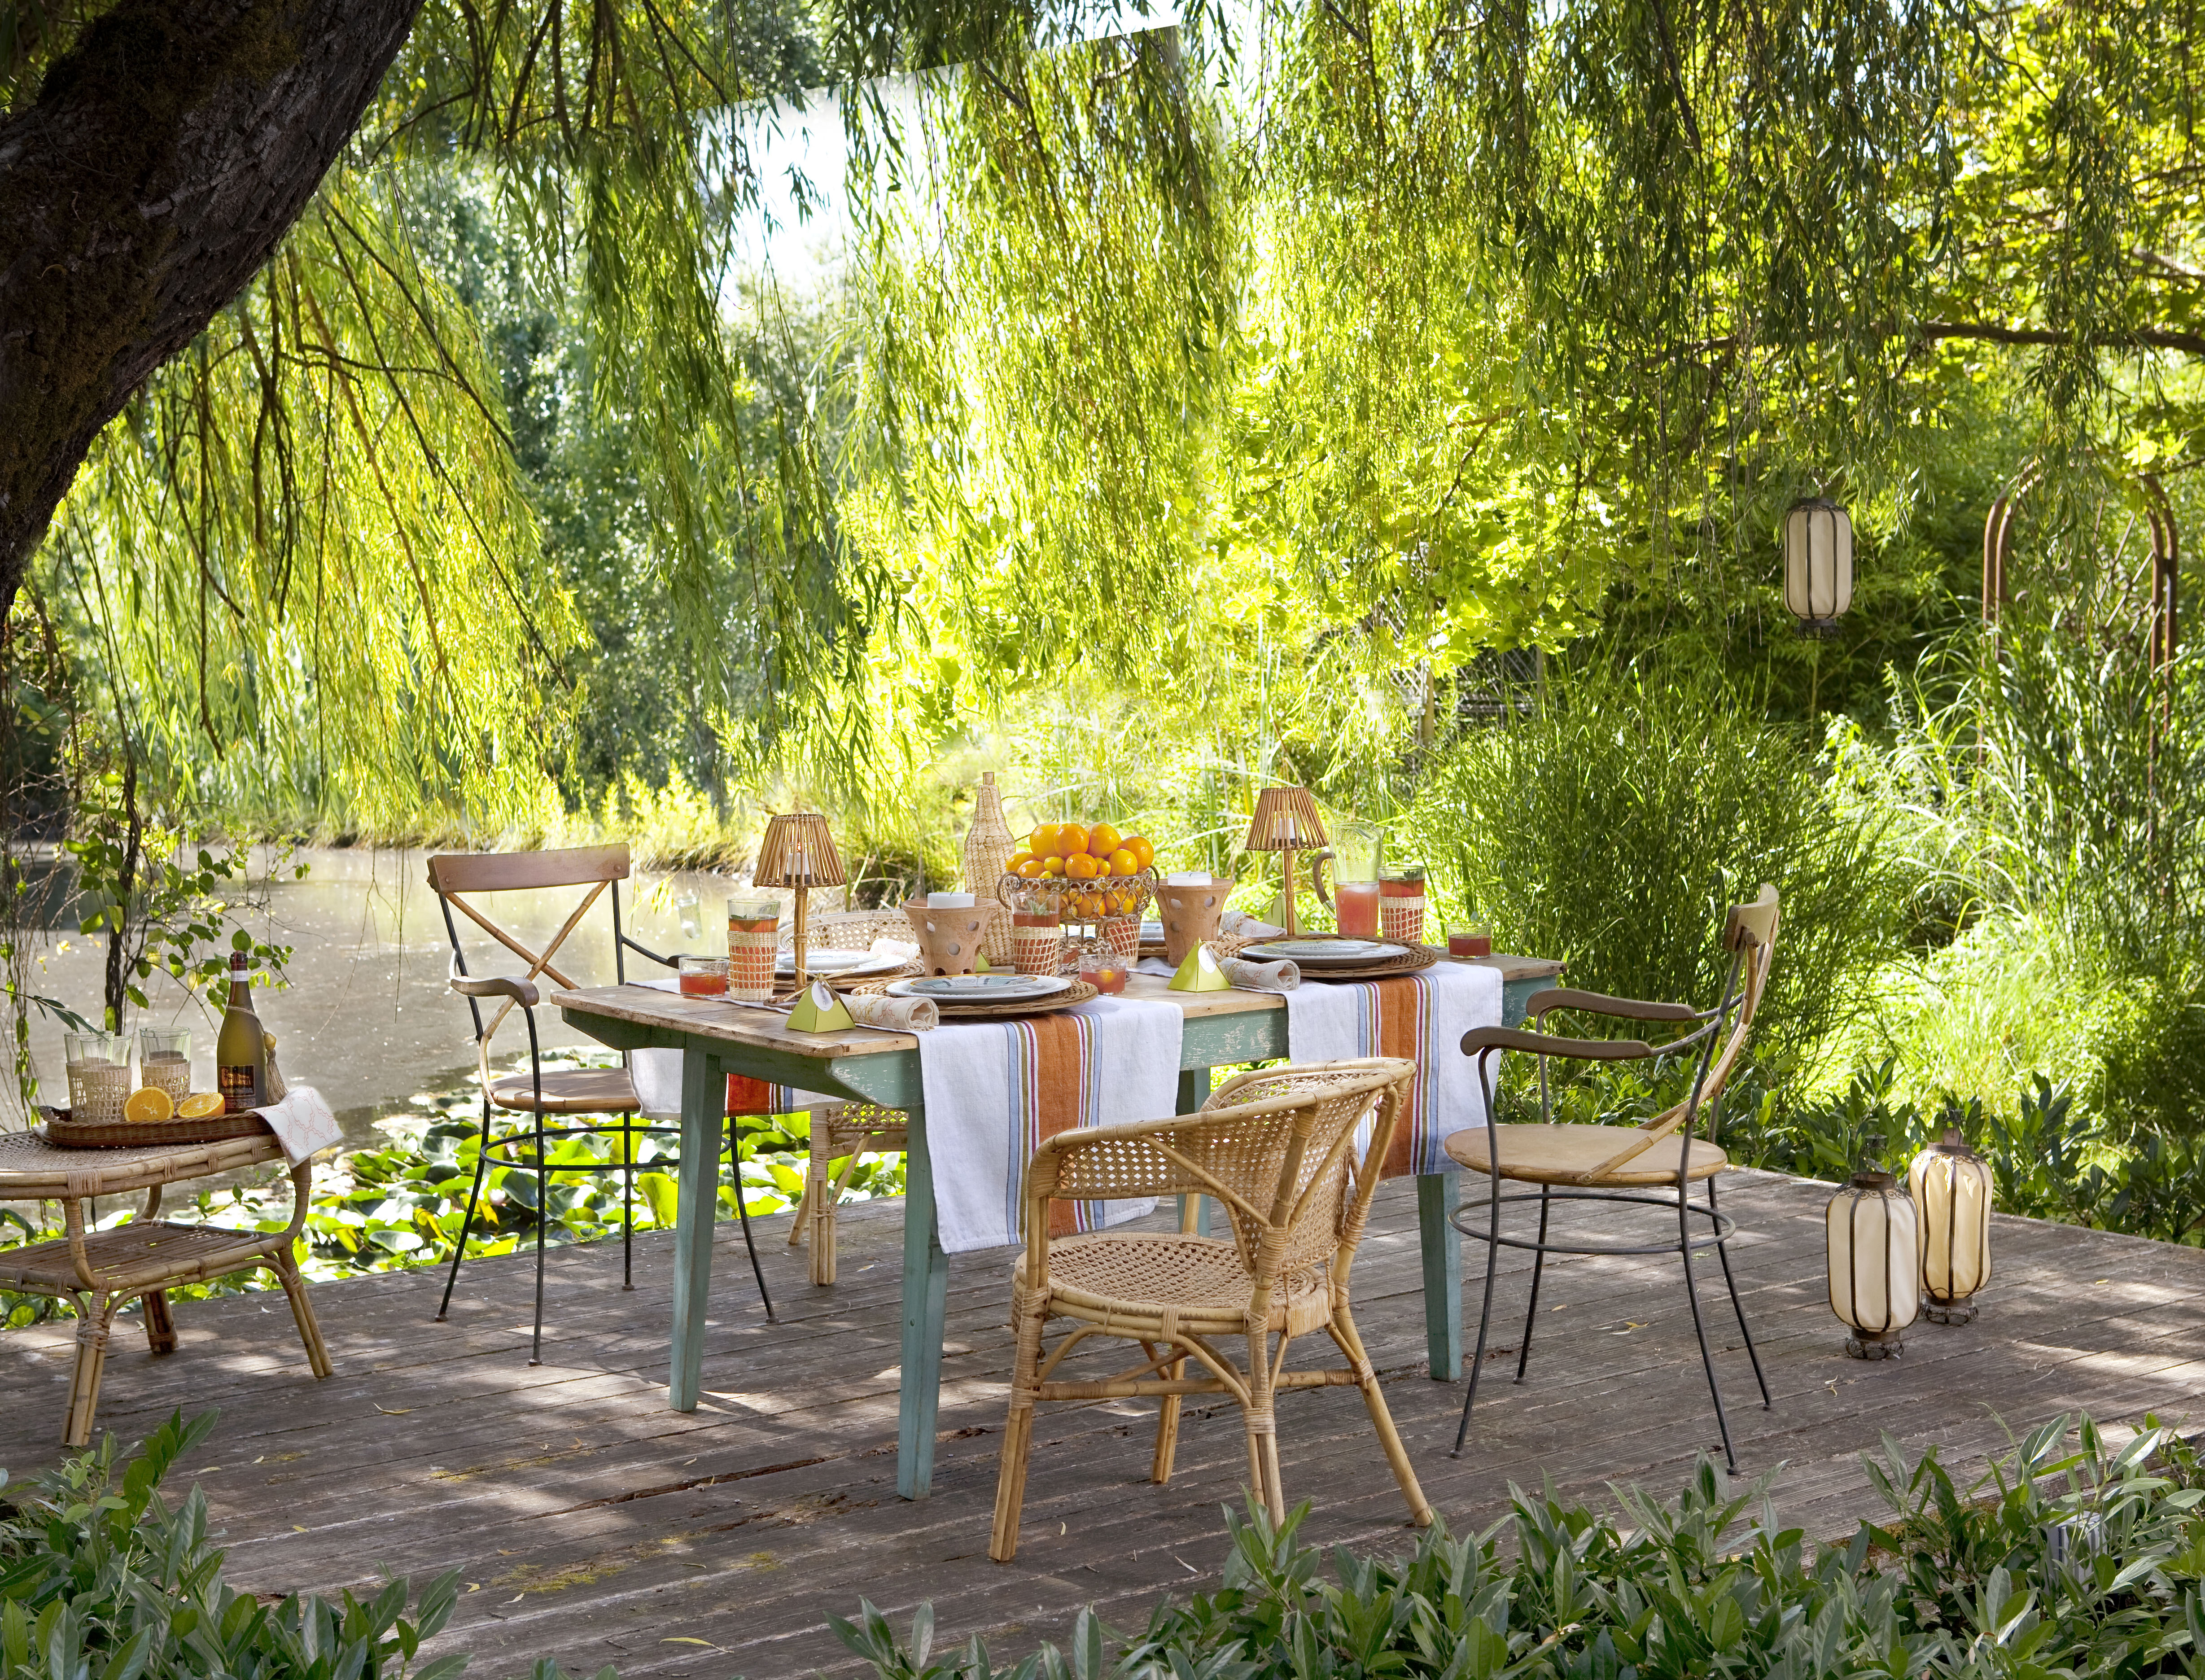 Backyard Summer Party Ideas Decor Table Centerpieces Summer Table ...